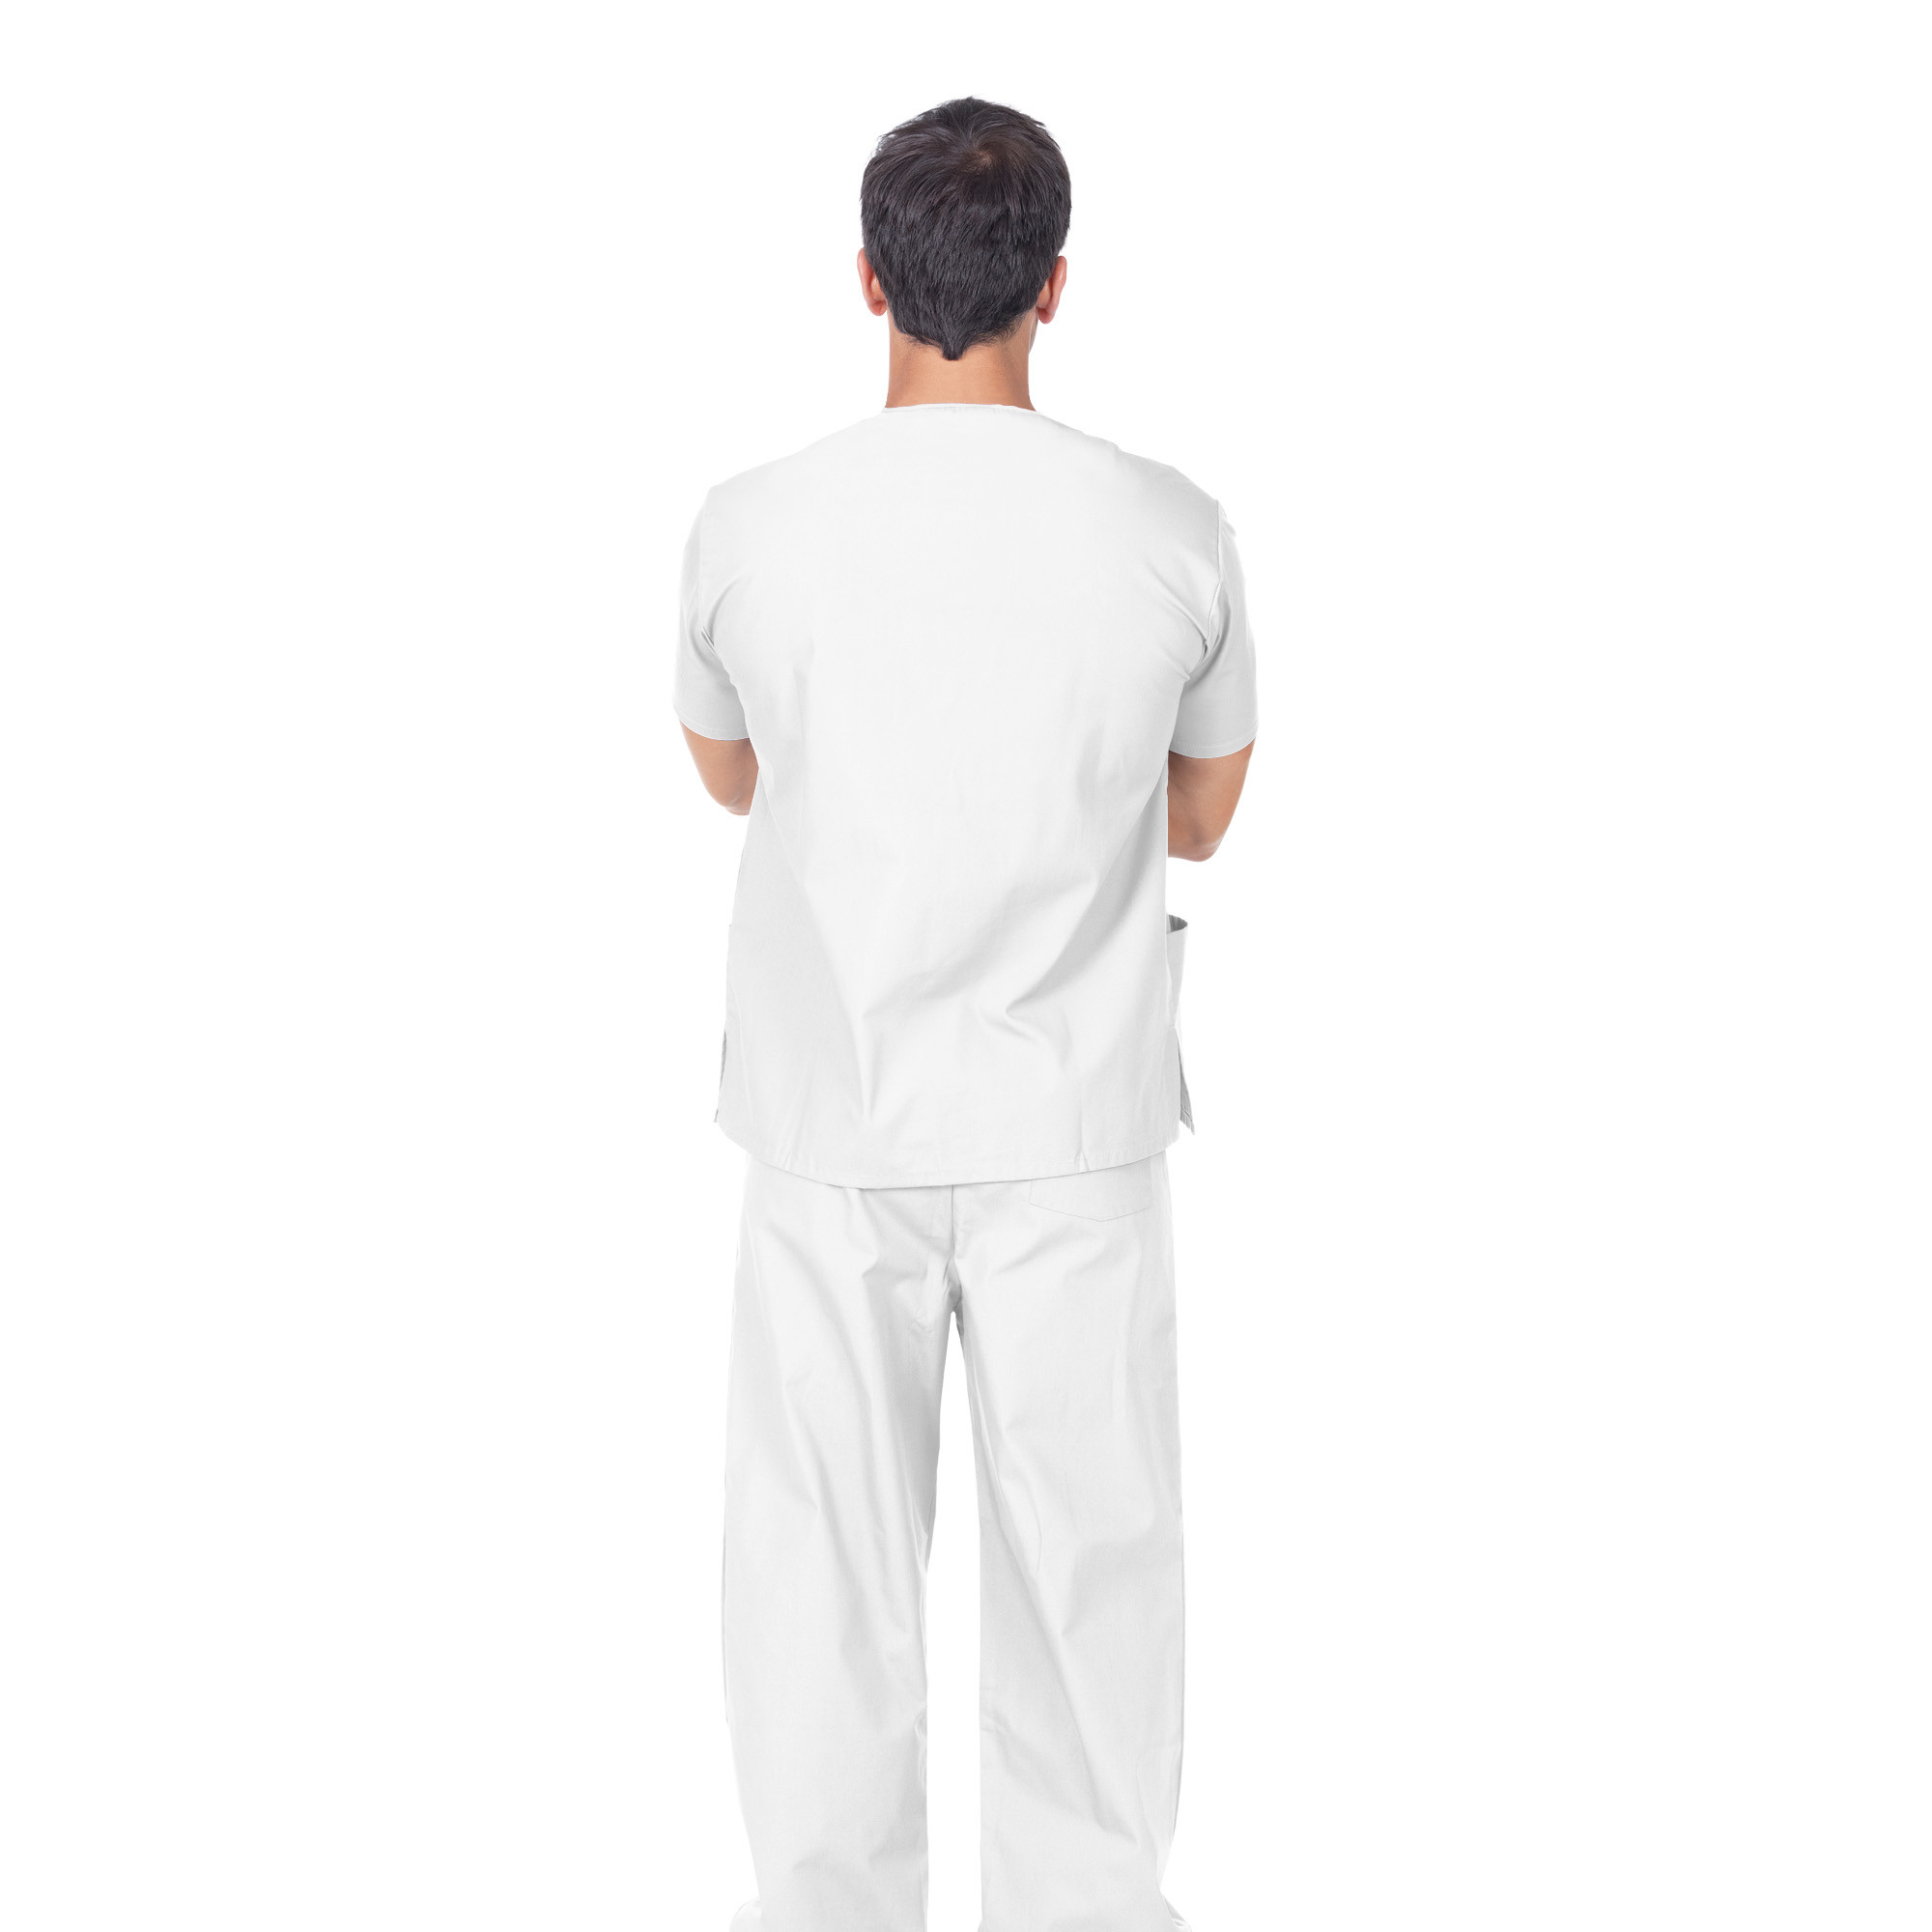 Pantalon professionnel en coton blanc Unisex taille XS